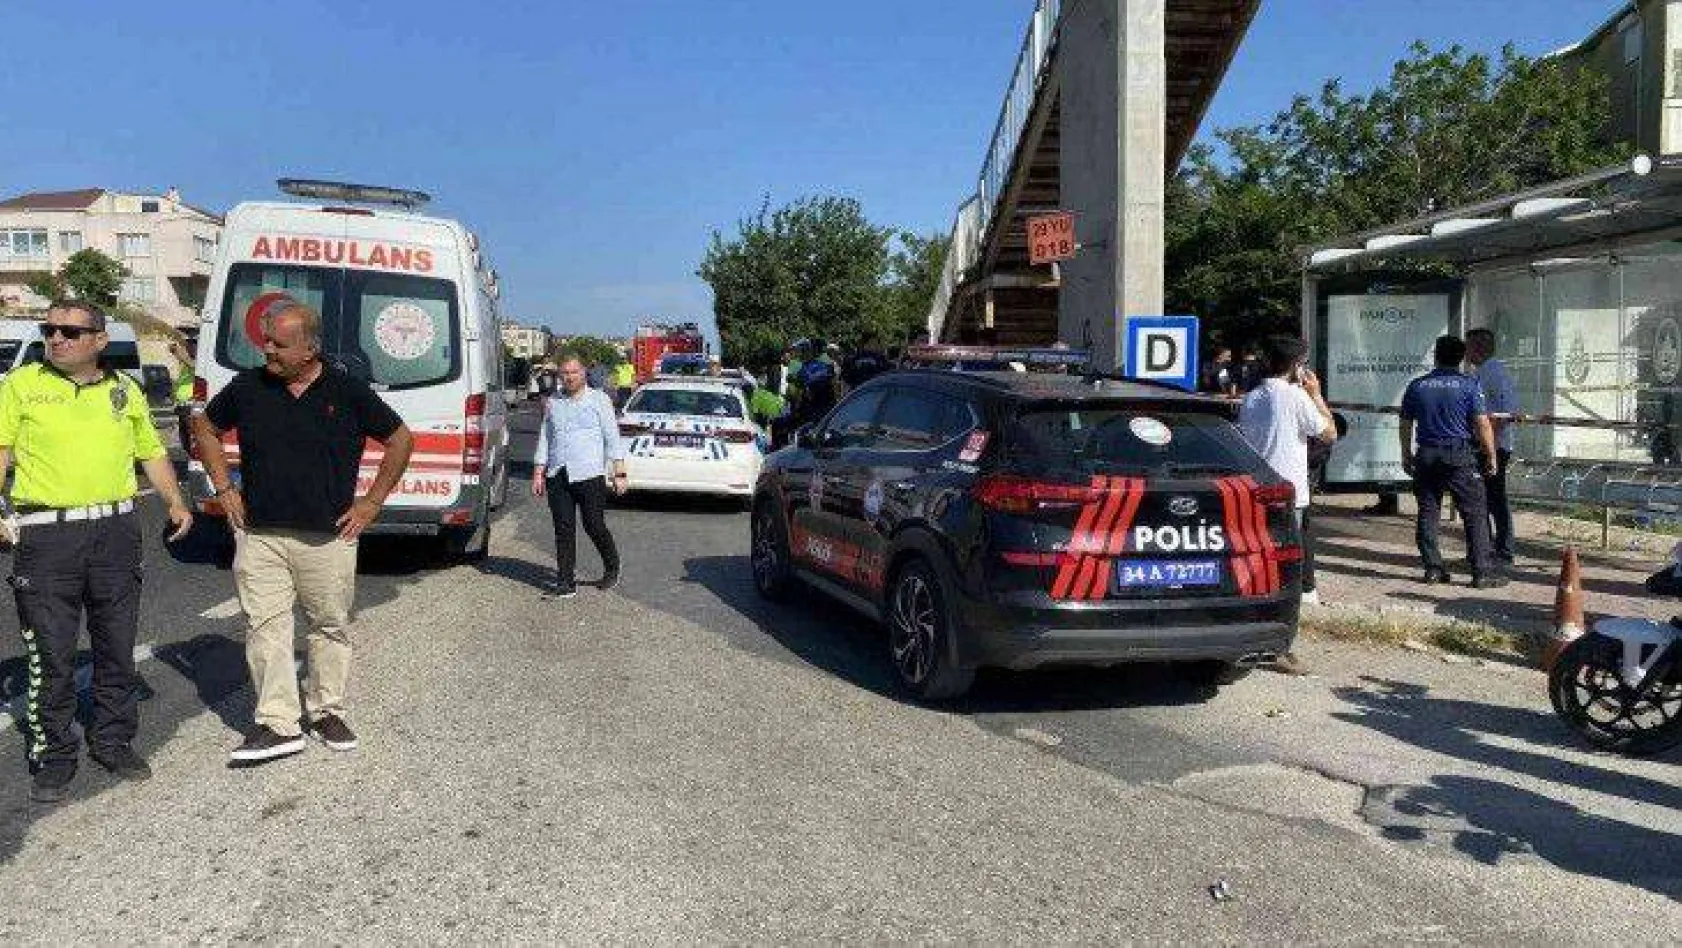 Kumburgaz'da otomobil otobüs durağındaki öğrencilerin arasına daldı: 1 ölü, 8 yaralı